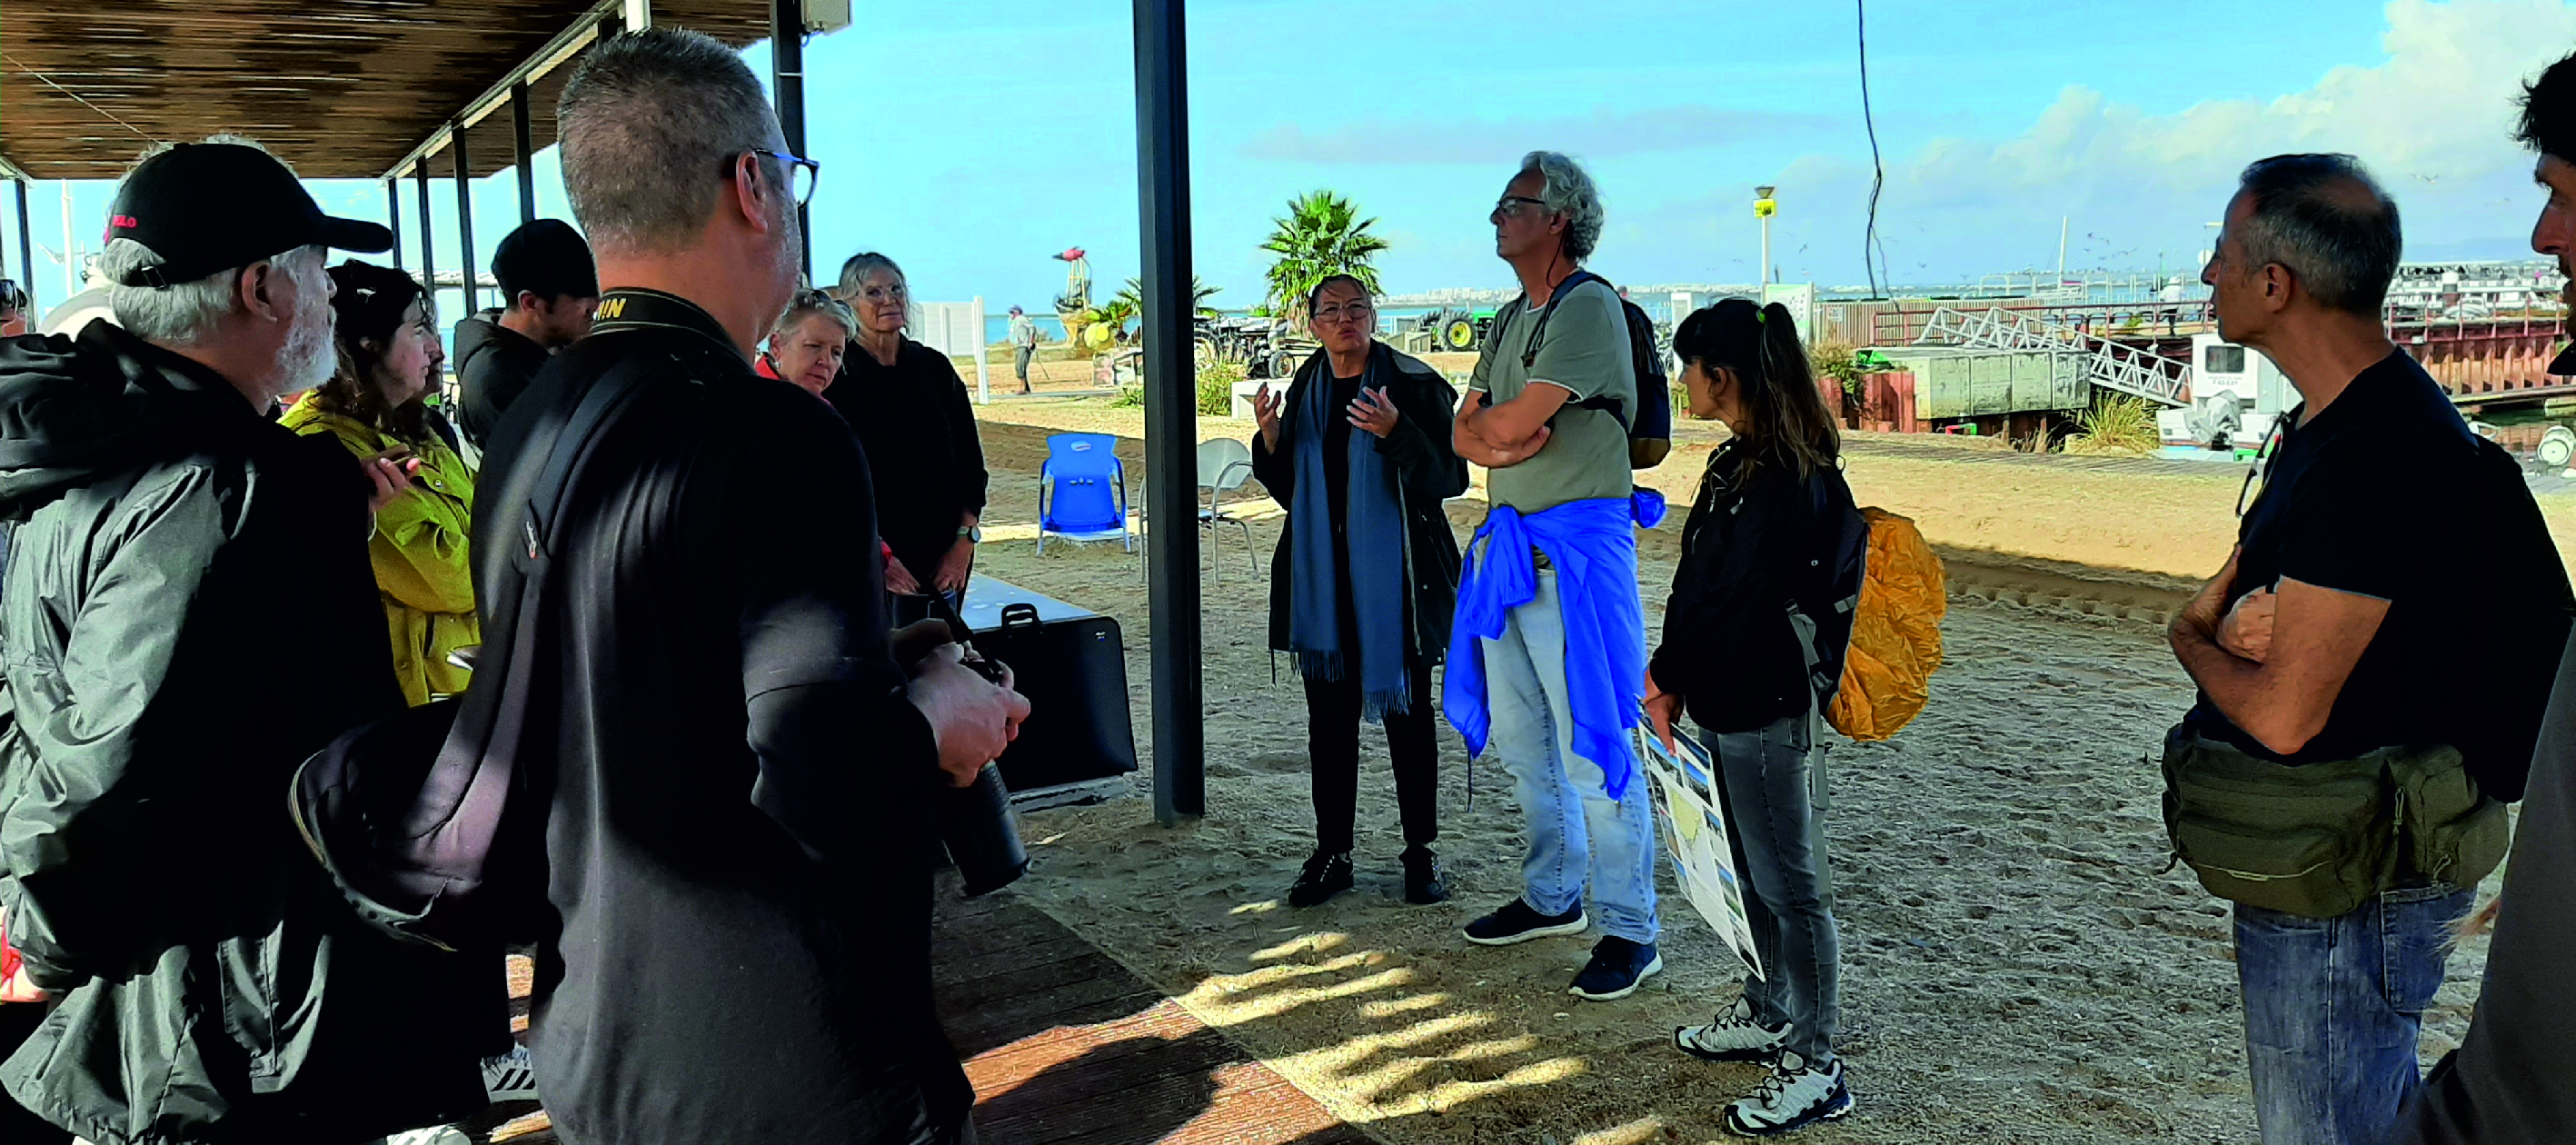 Óscar Ferreira, Rita Carrasco e Ana Matias fazem passeio comentado pela Ilha da Culatra, promovido pela associação de atividades culturais DeVIR